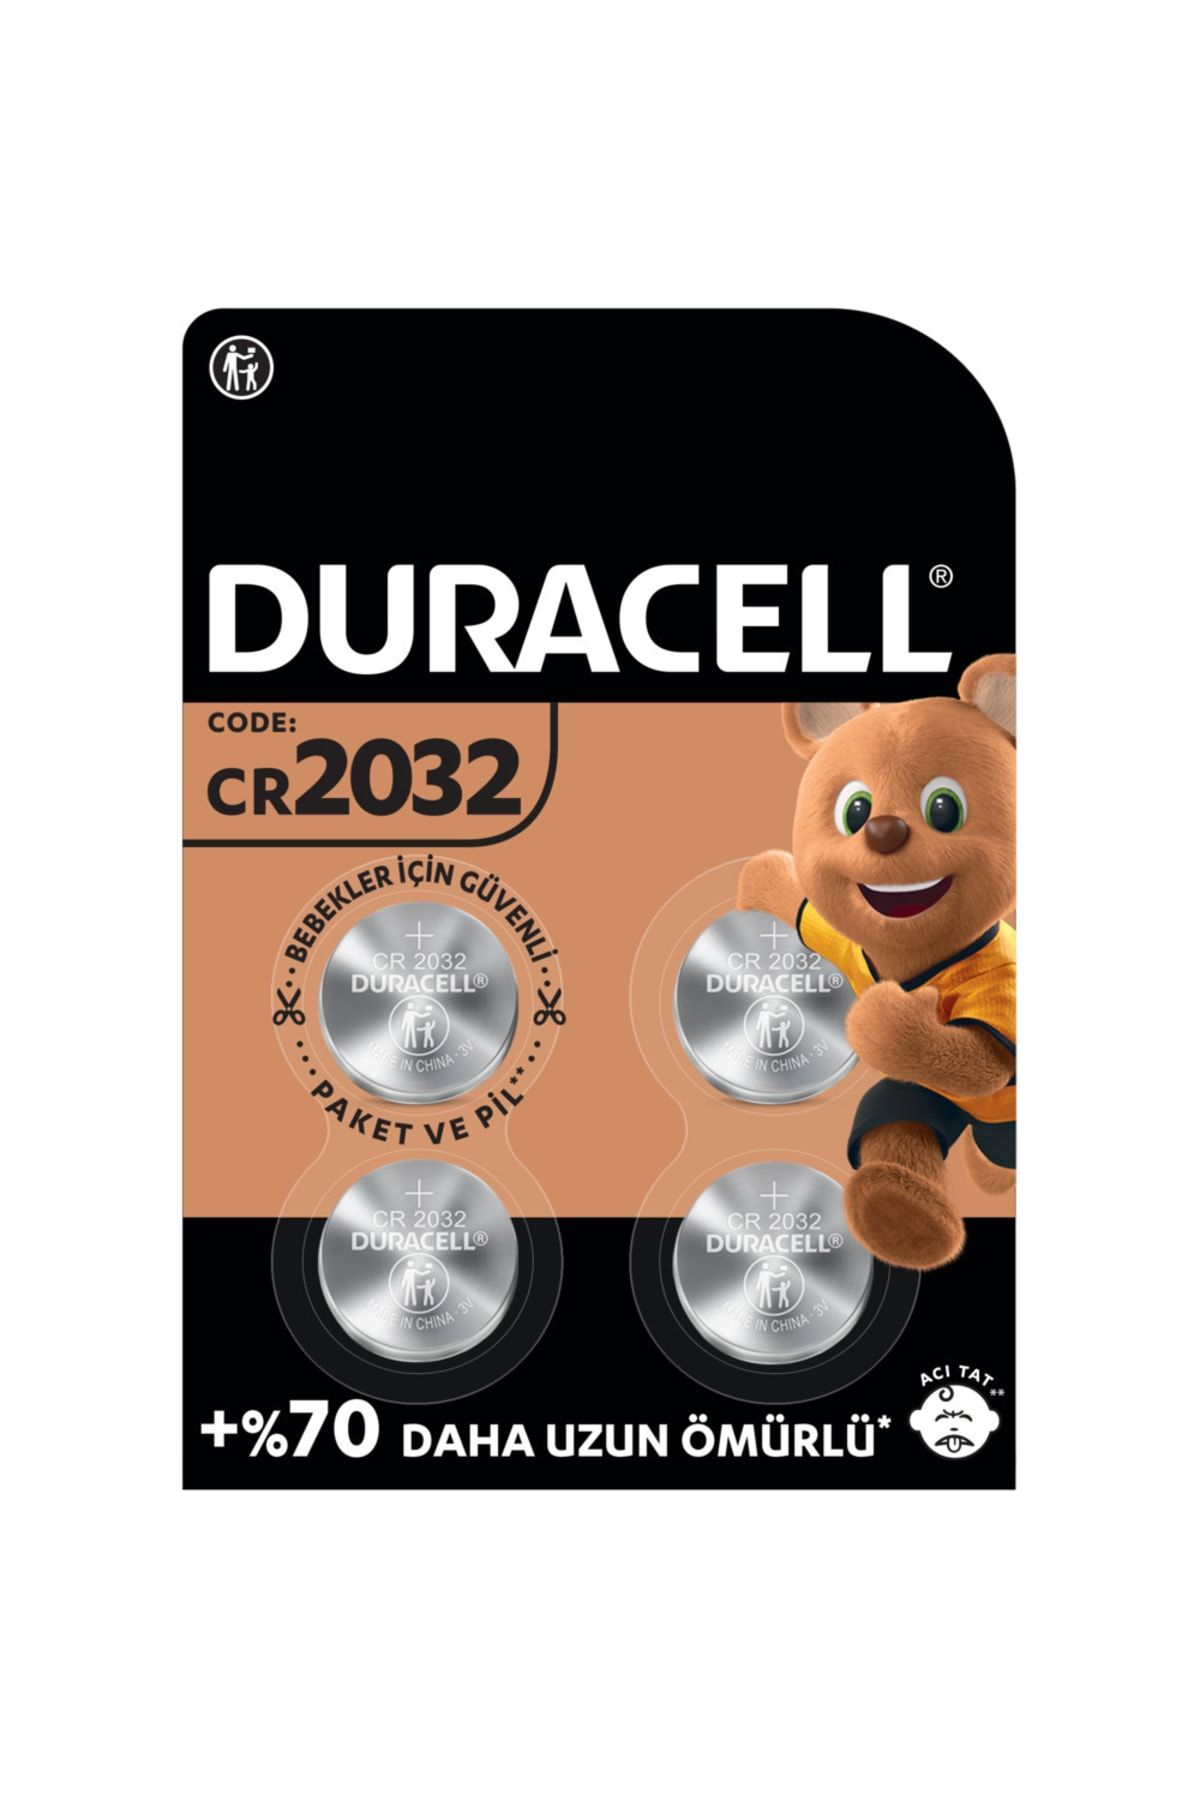 Duracell Özel 2032 Lityum Düğme Pil 3v, (CR2032), 4’lü Paket